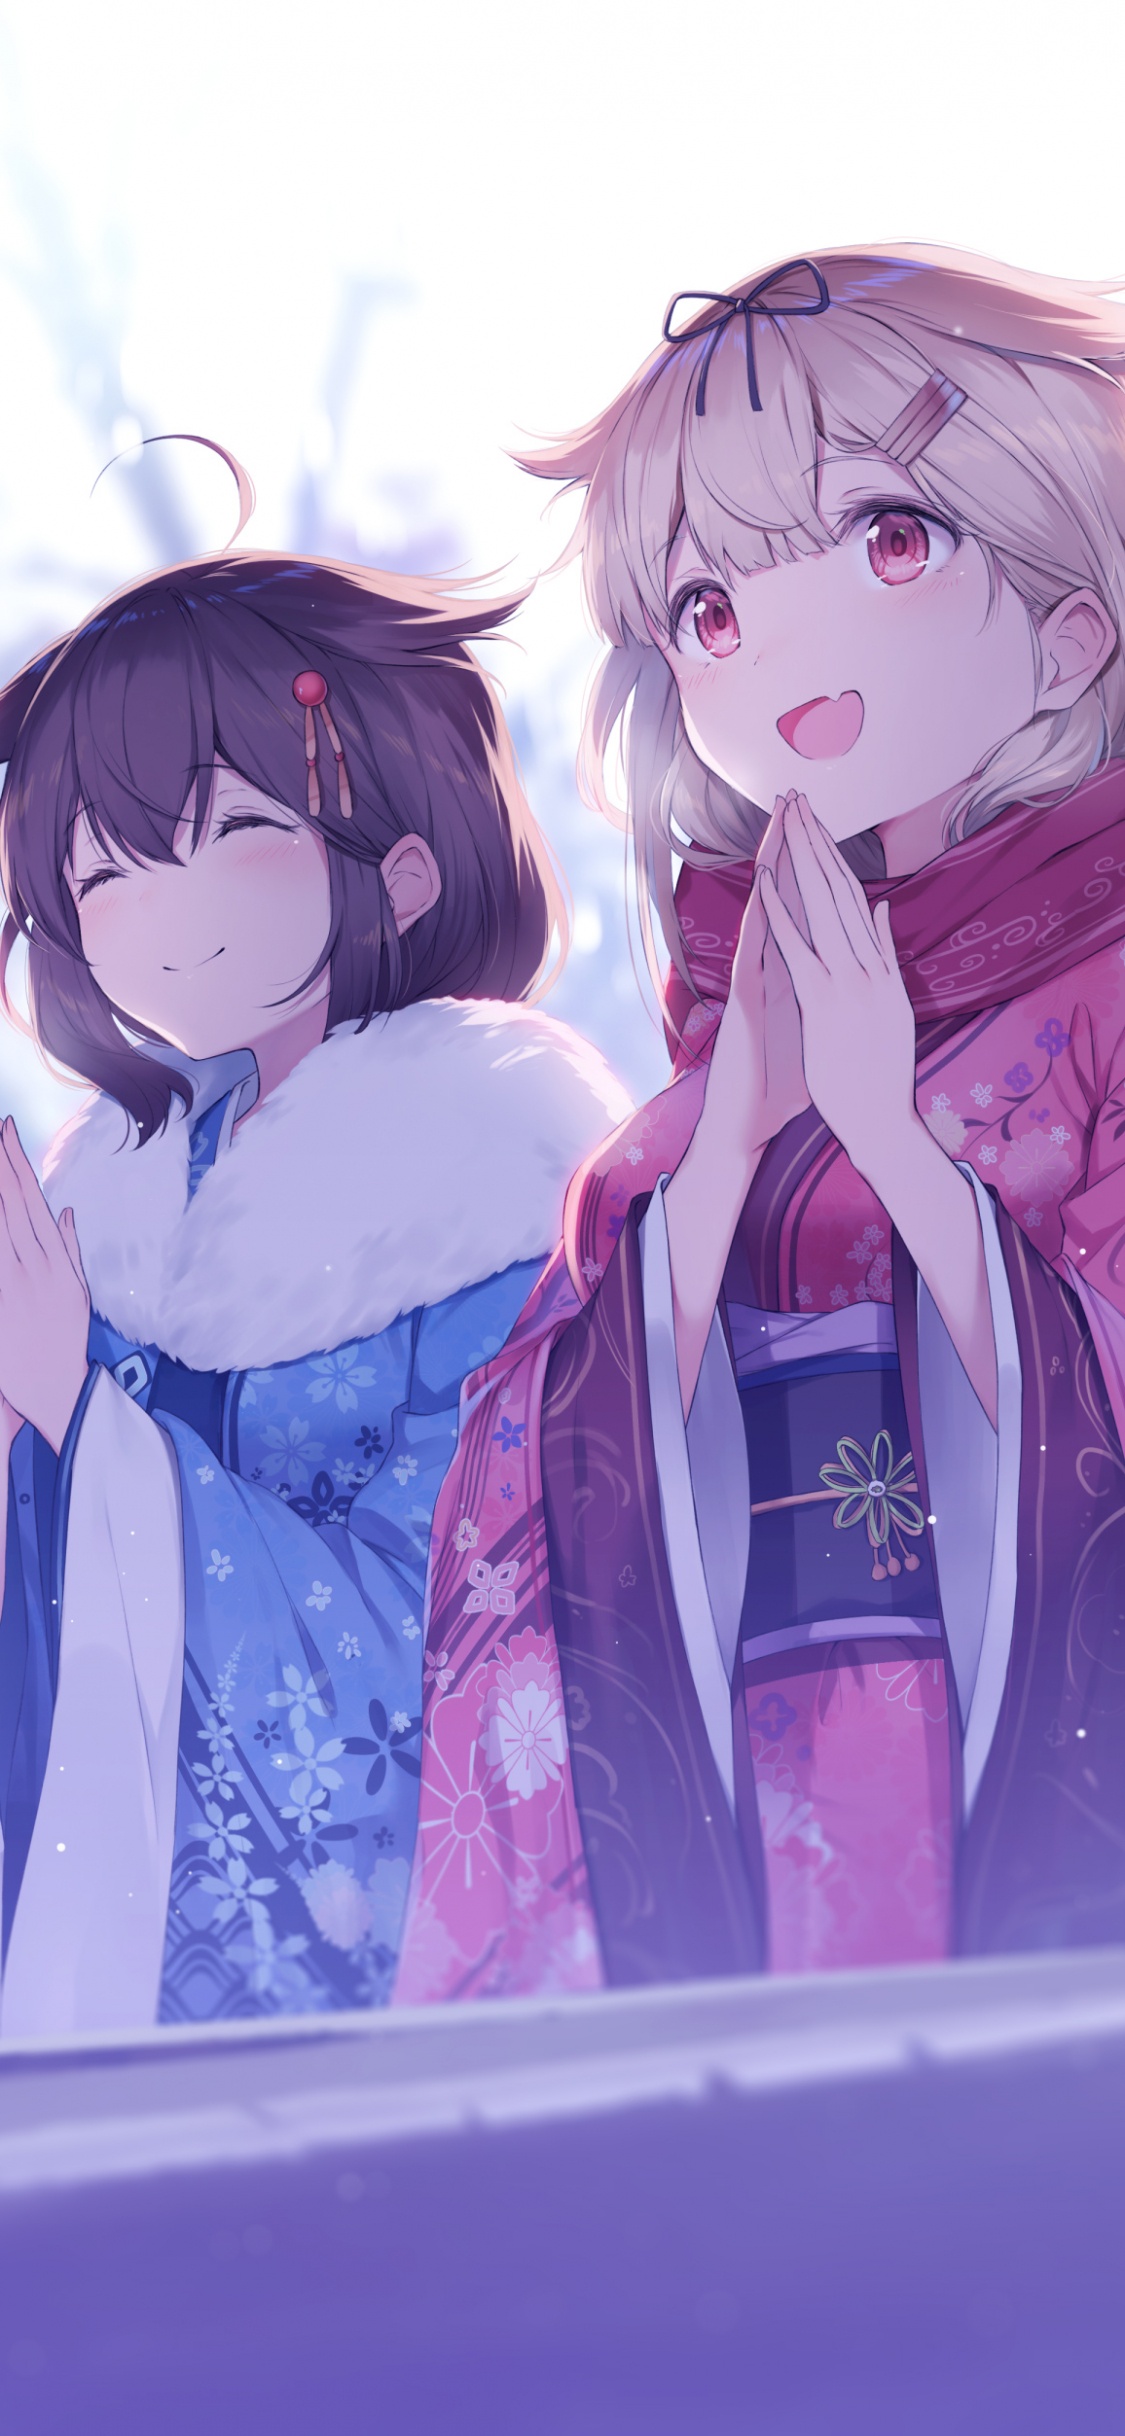 Mädchen in Blau-weißer Jacke Anime-Charakter. Wallpaper in 1125x2436 Resolution